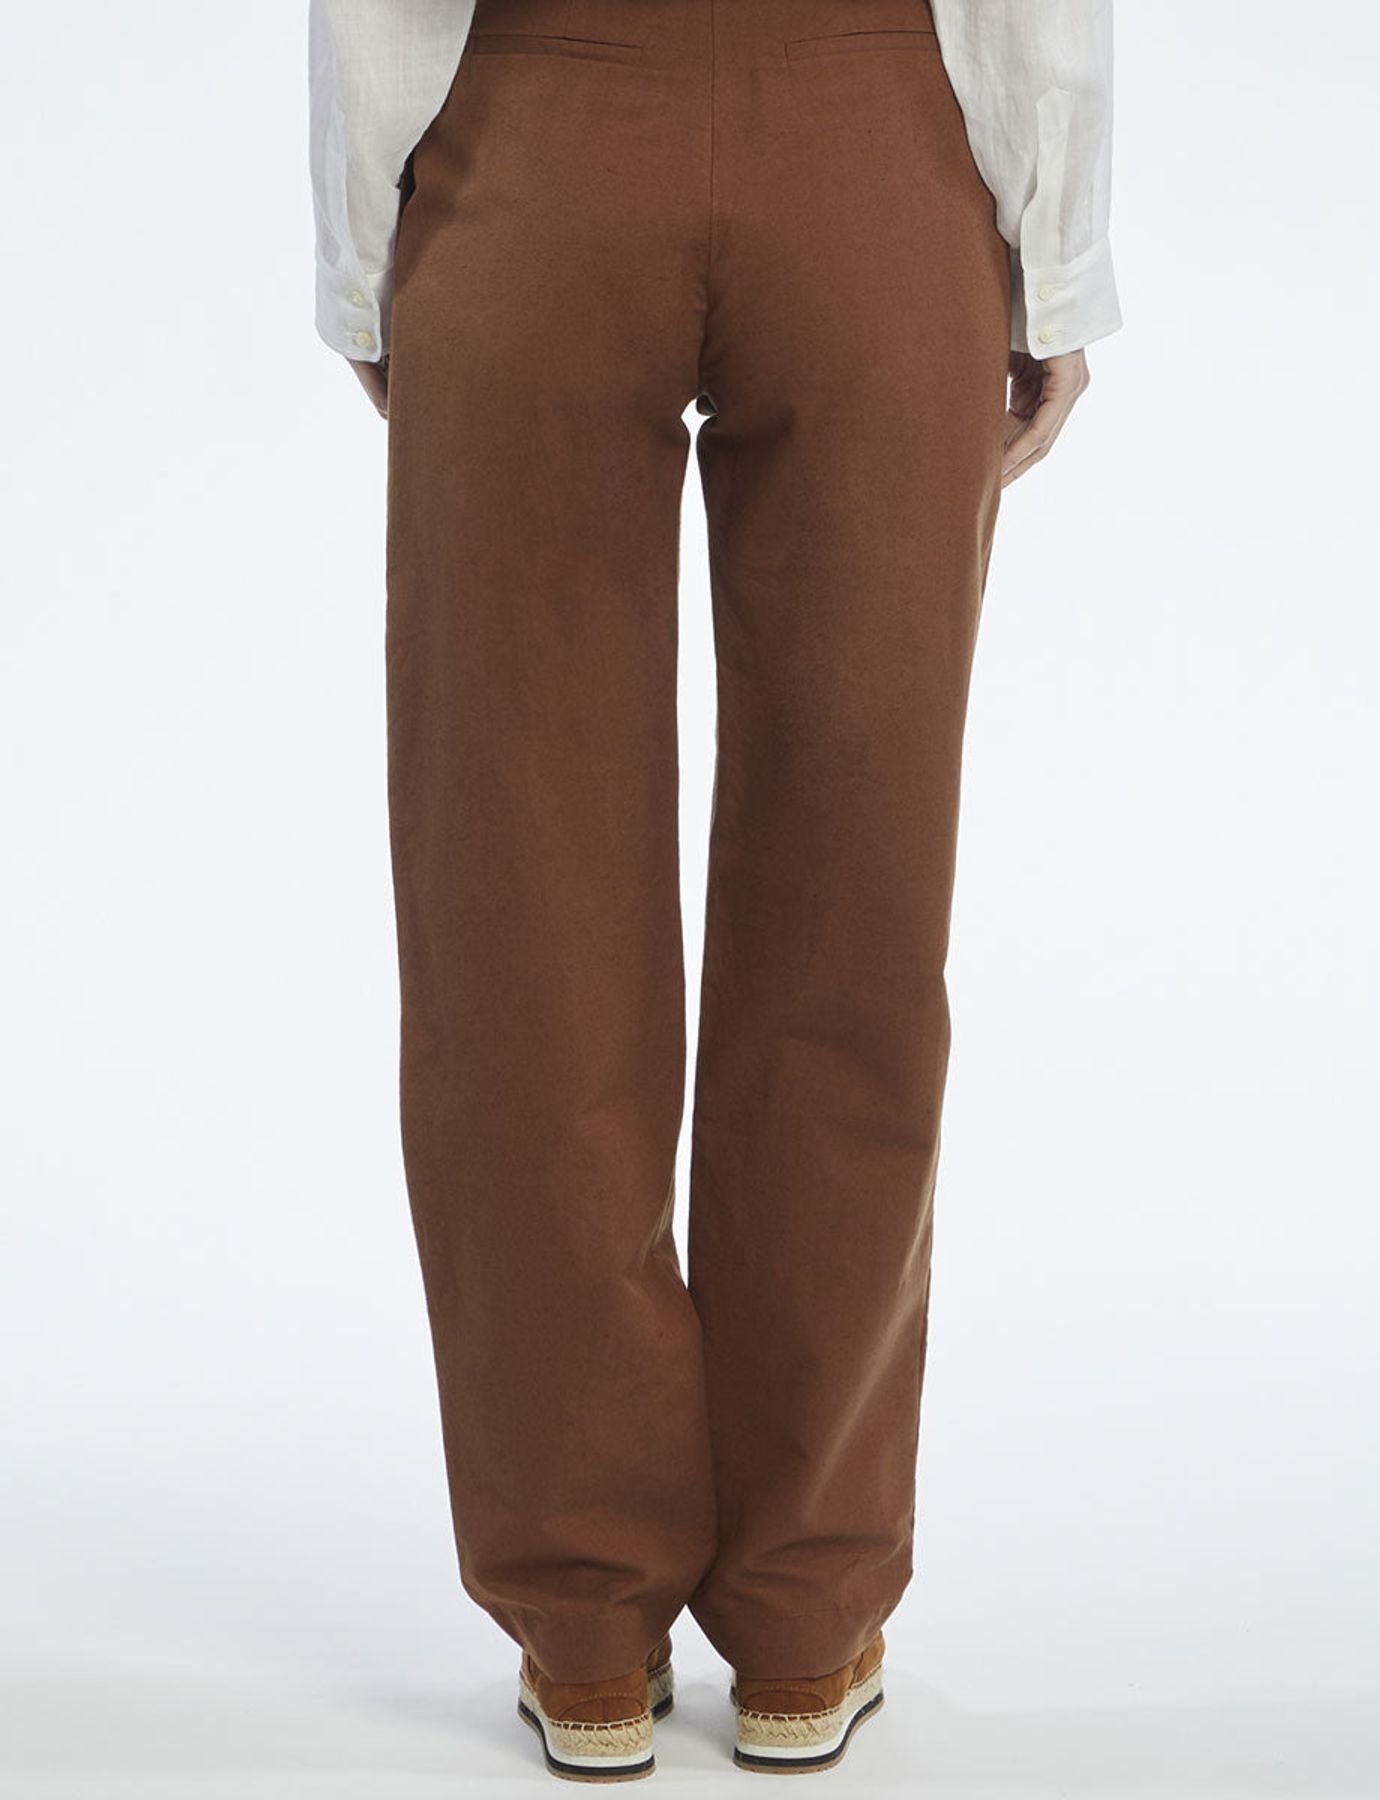 pantalon-atalia-marron